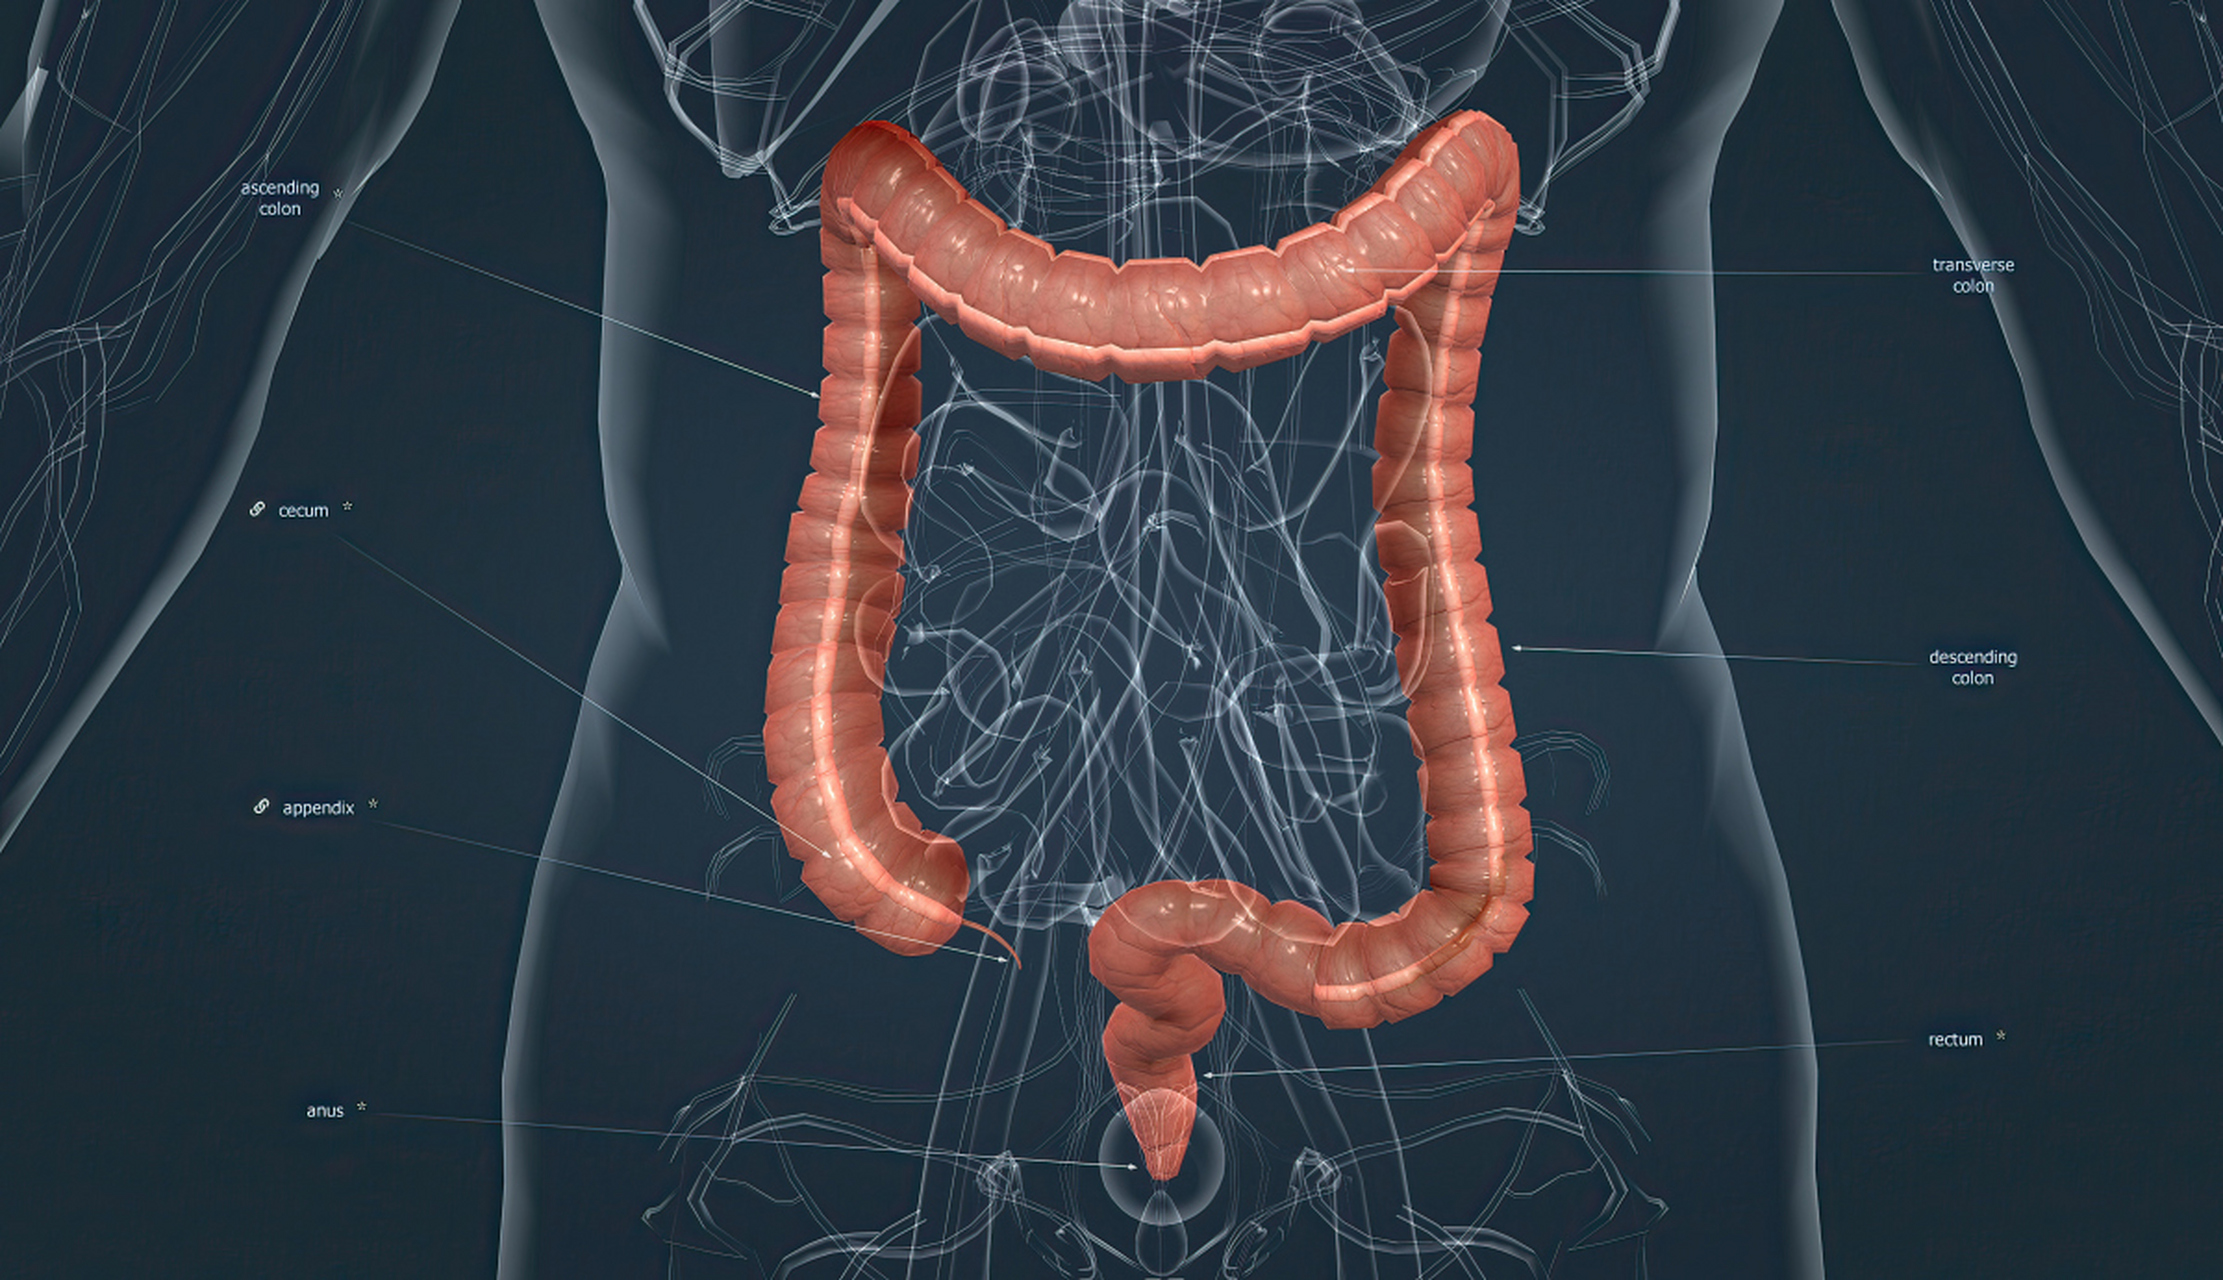 腹泻:腹泻是溃疡性结肠炎最常见的症状,通常伴随着粘液和血液的排出